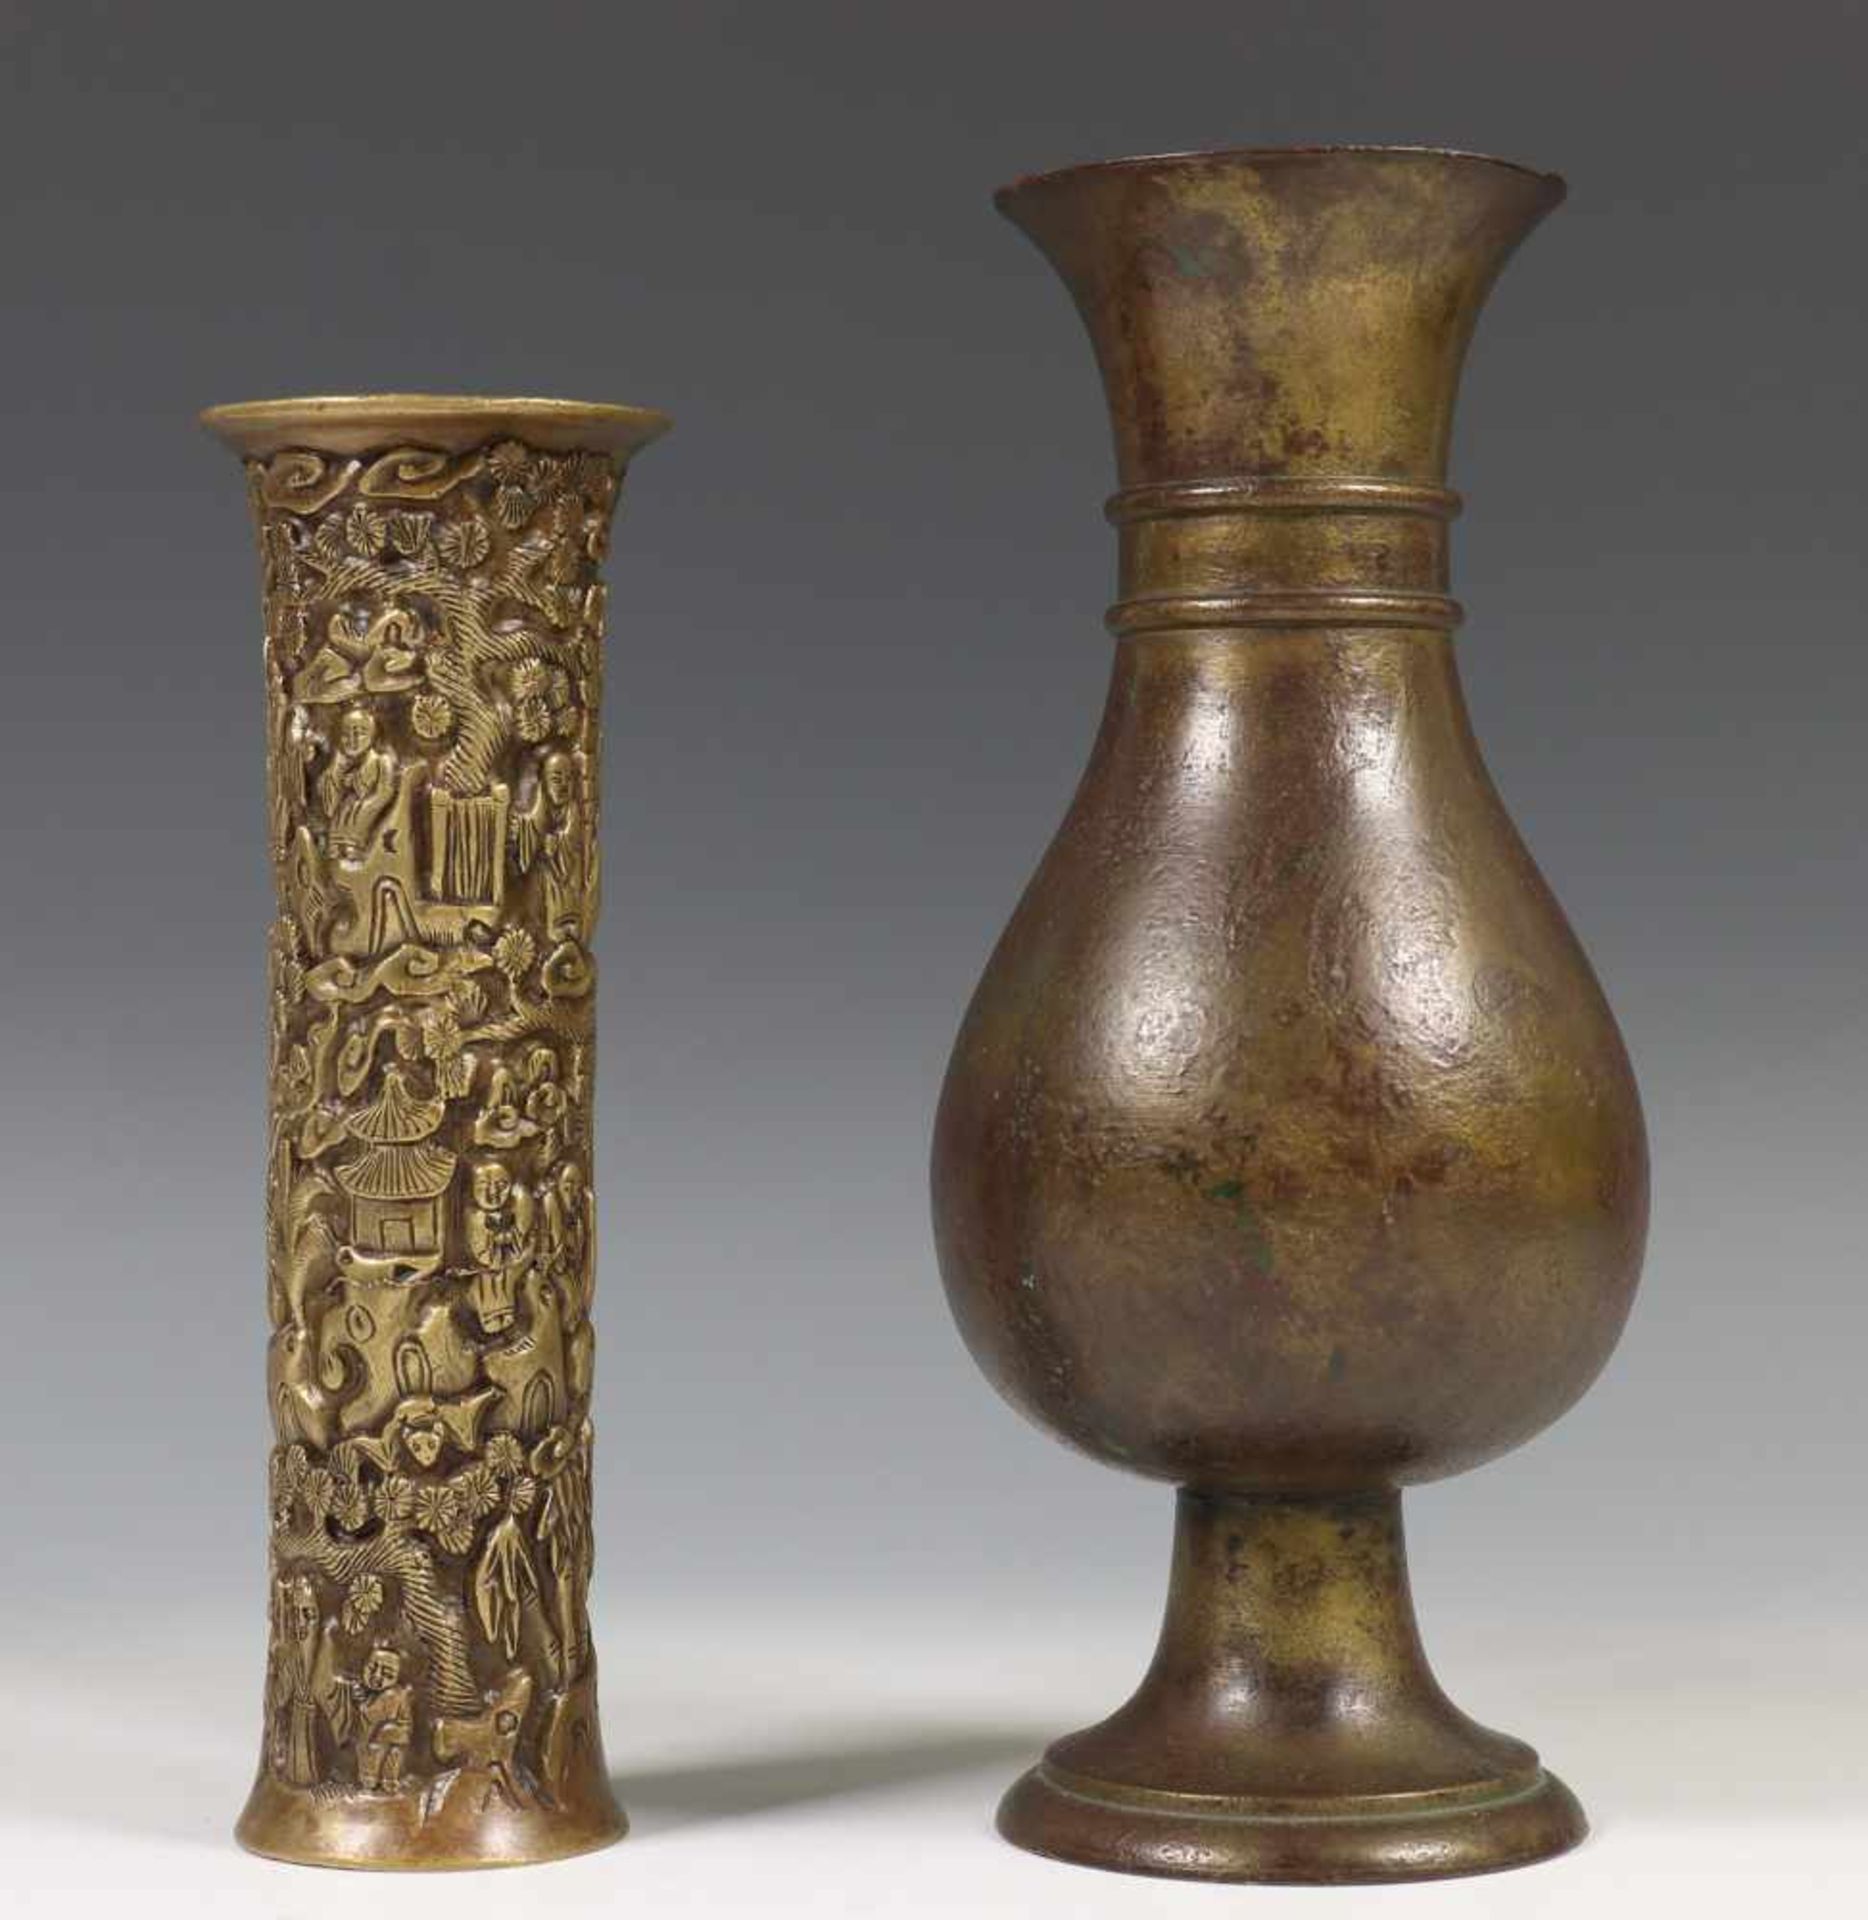 China, twee bronzen vazen, Ming-Qing dynastie,een cilindervormige vaas gemodelleerd met figuren in